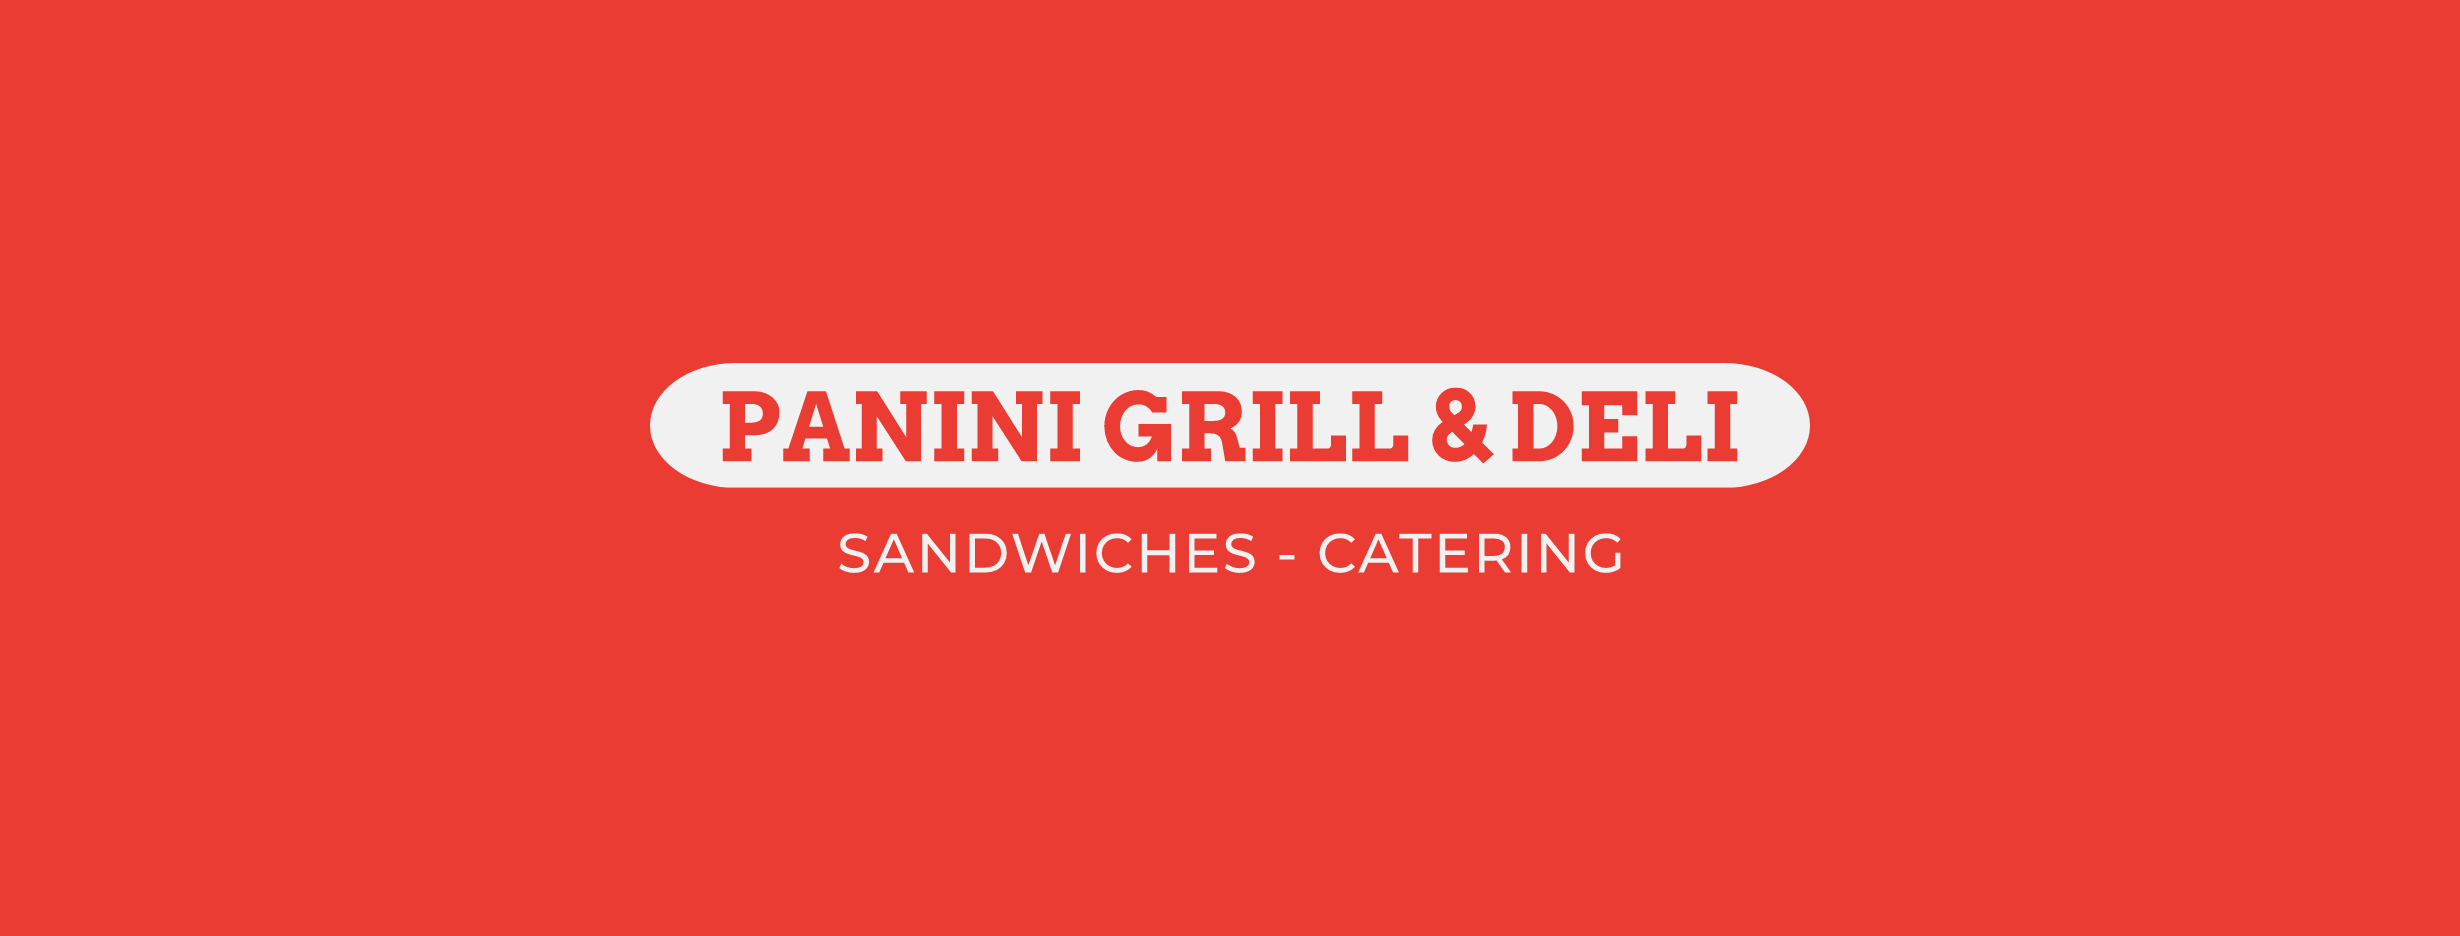 Panini Grill & Deli Sandwiches